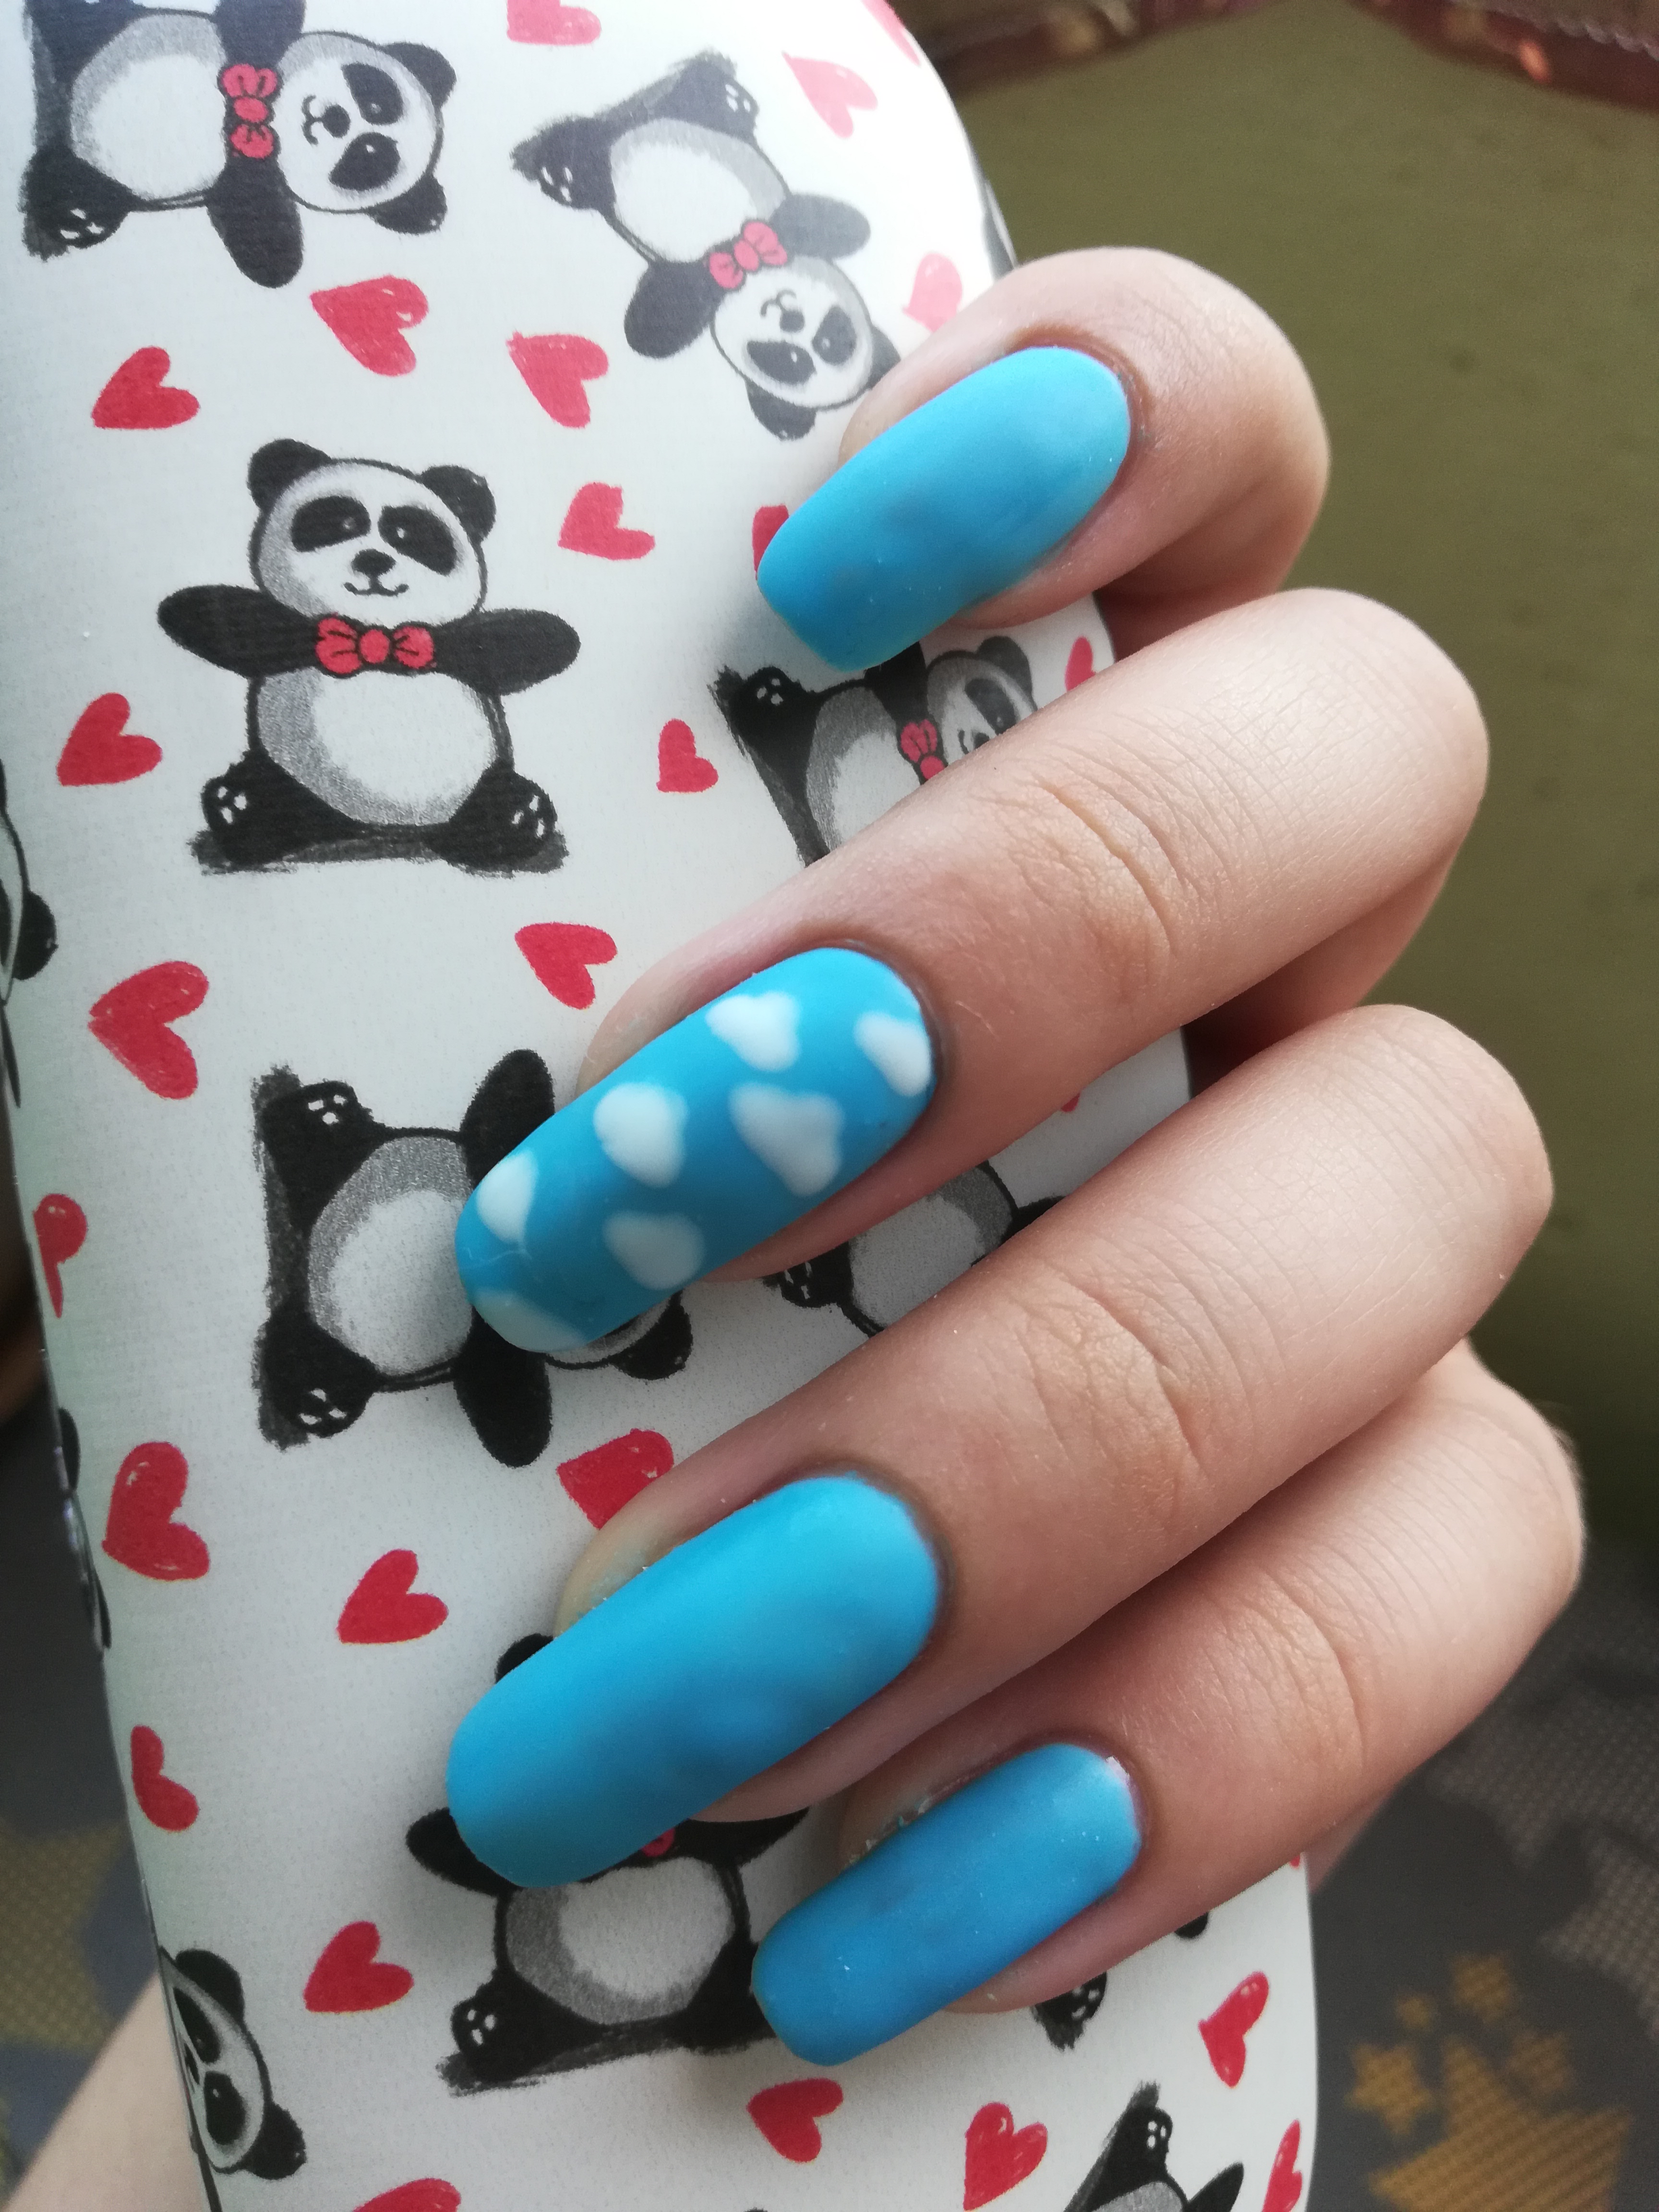 Матовый маникюр с облаками в голубом цвете на длинные ногти.